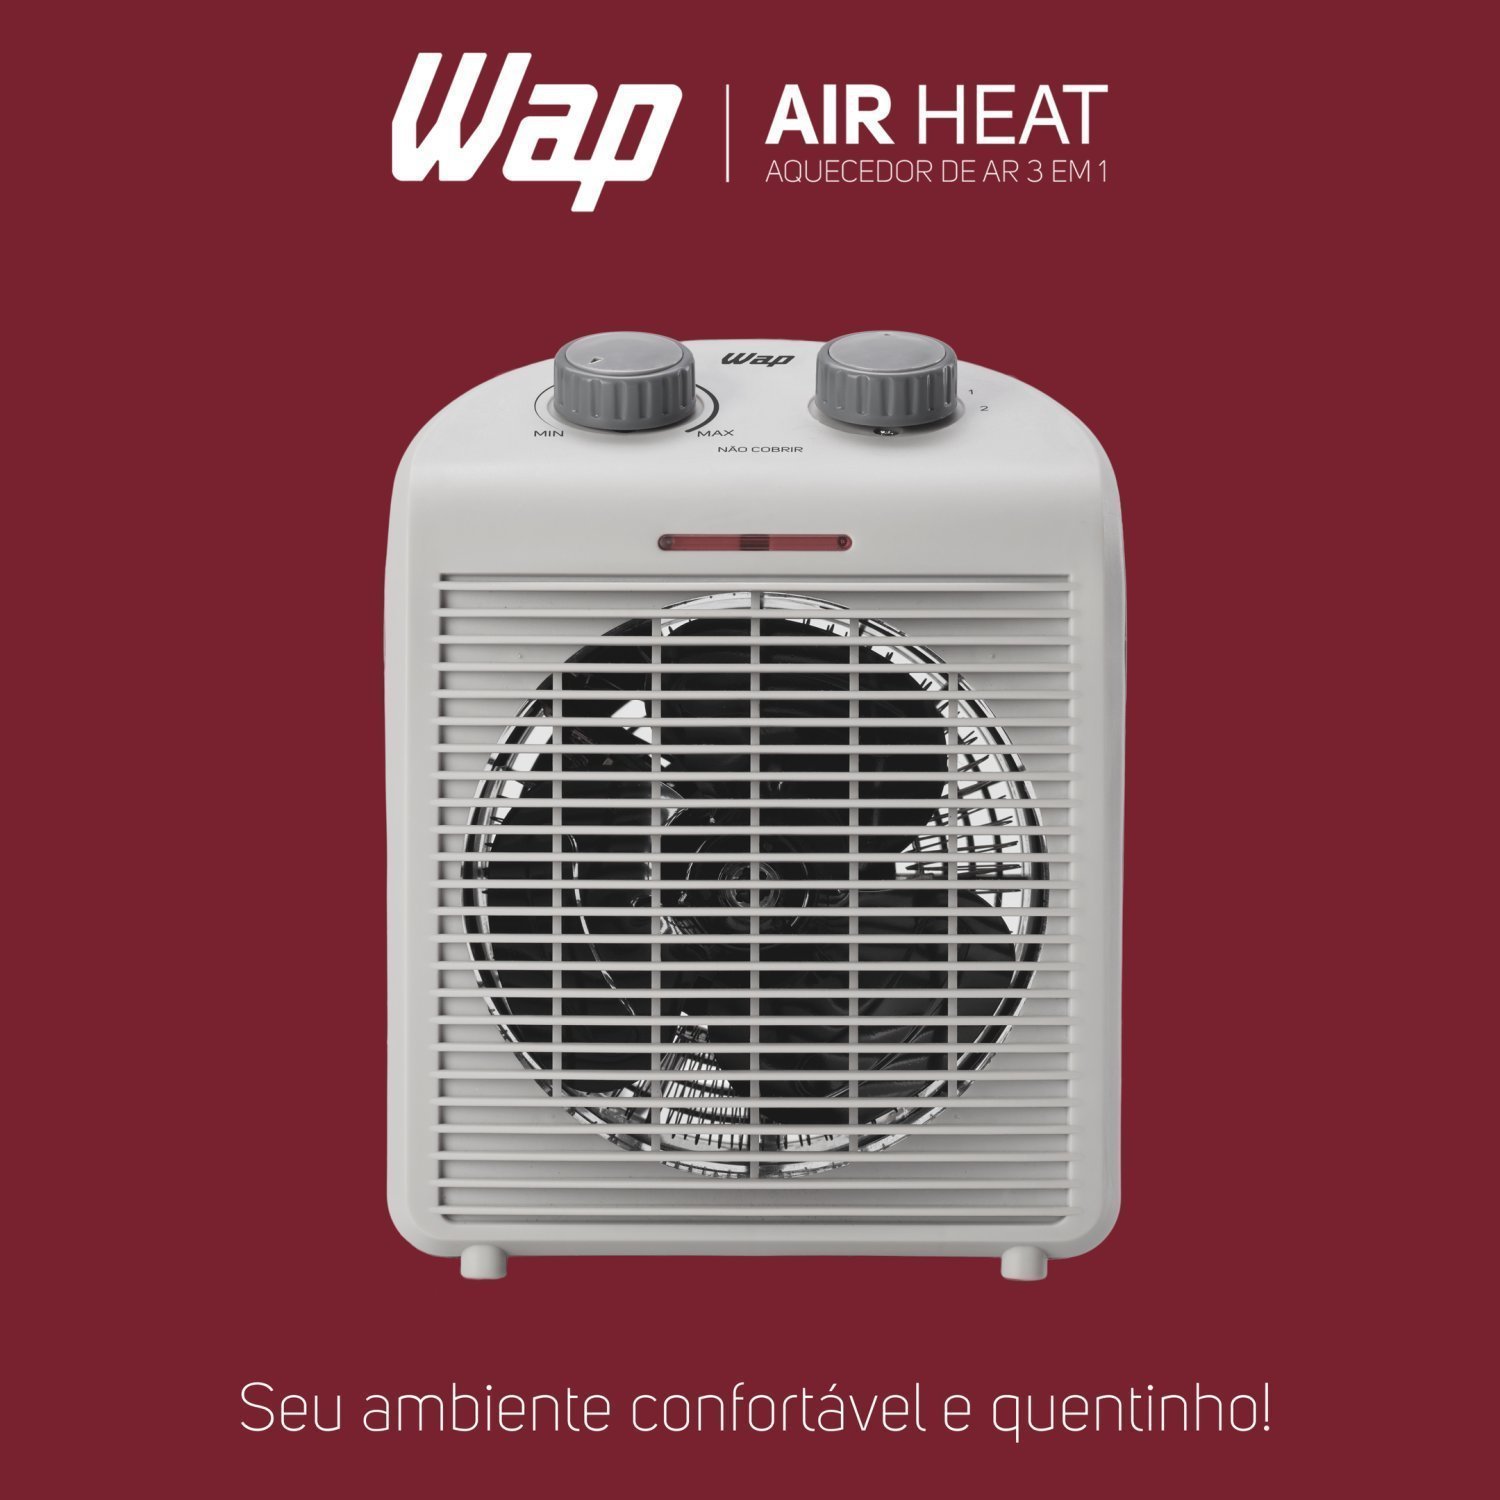 Aquecedor de Ar Portátil Air Heat 3 em 1 1500w 127v WAP Branco - 10